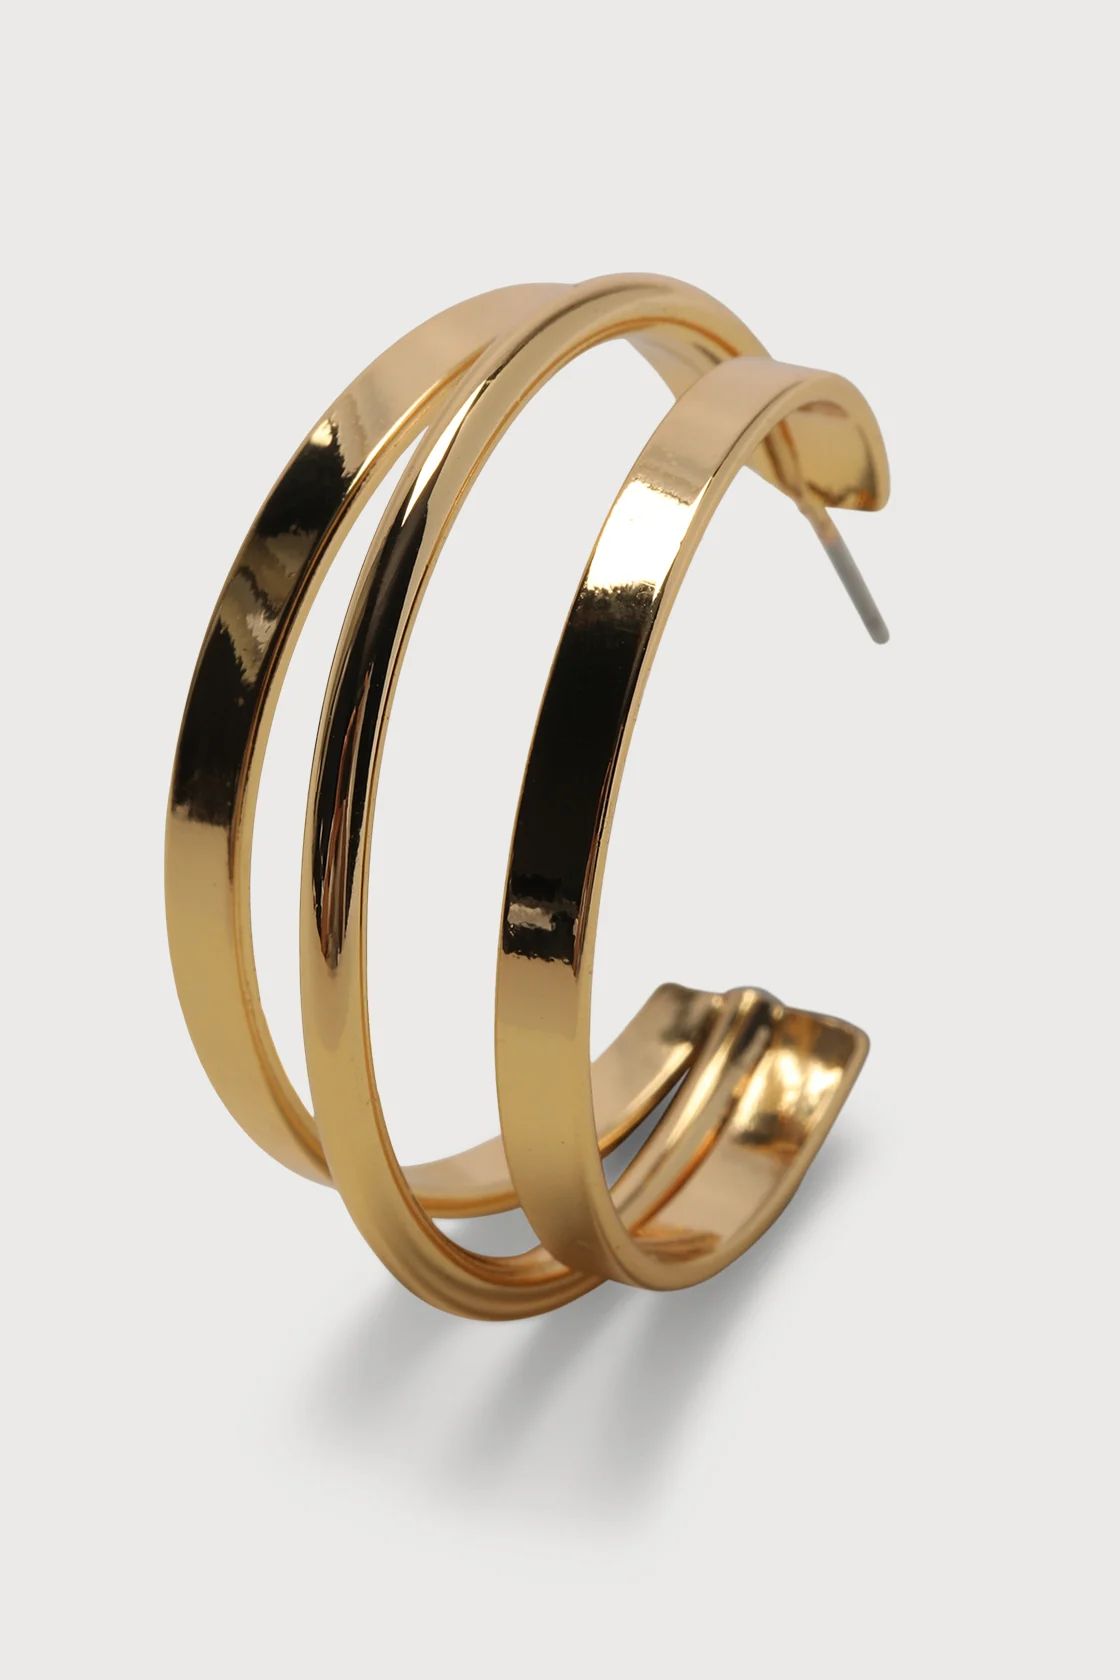 Any Excuse 14KT Gold 3D Hoop Earrings | Lulus (US)